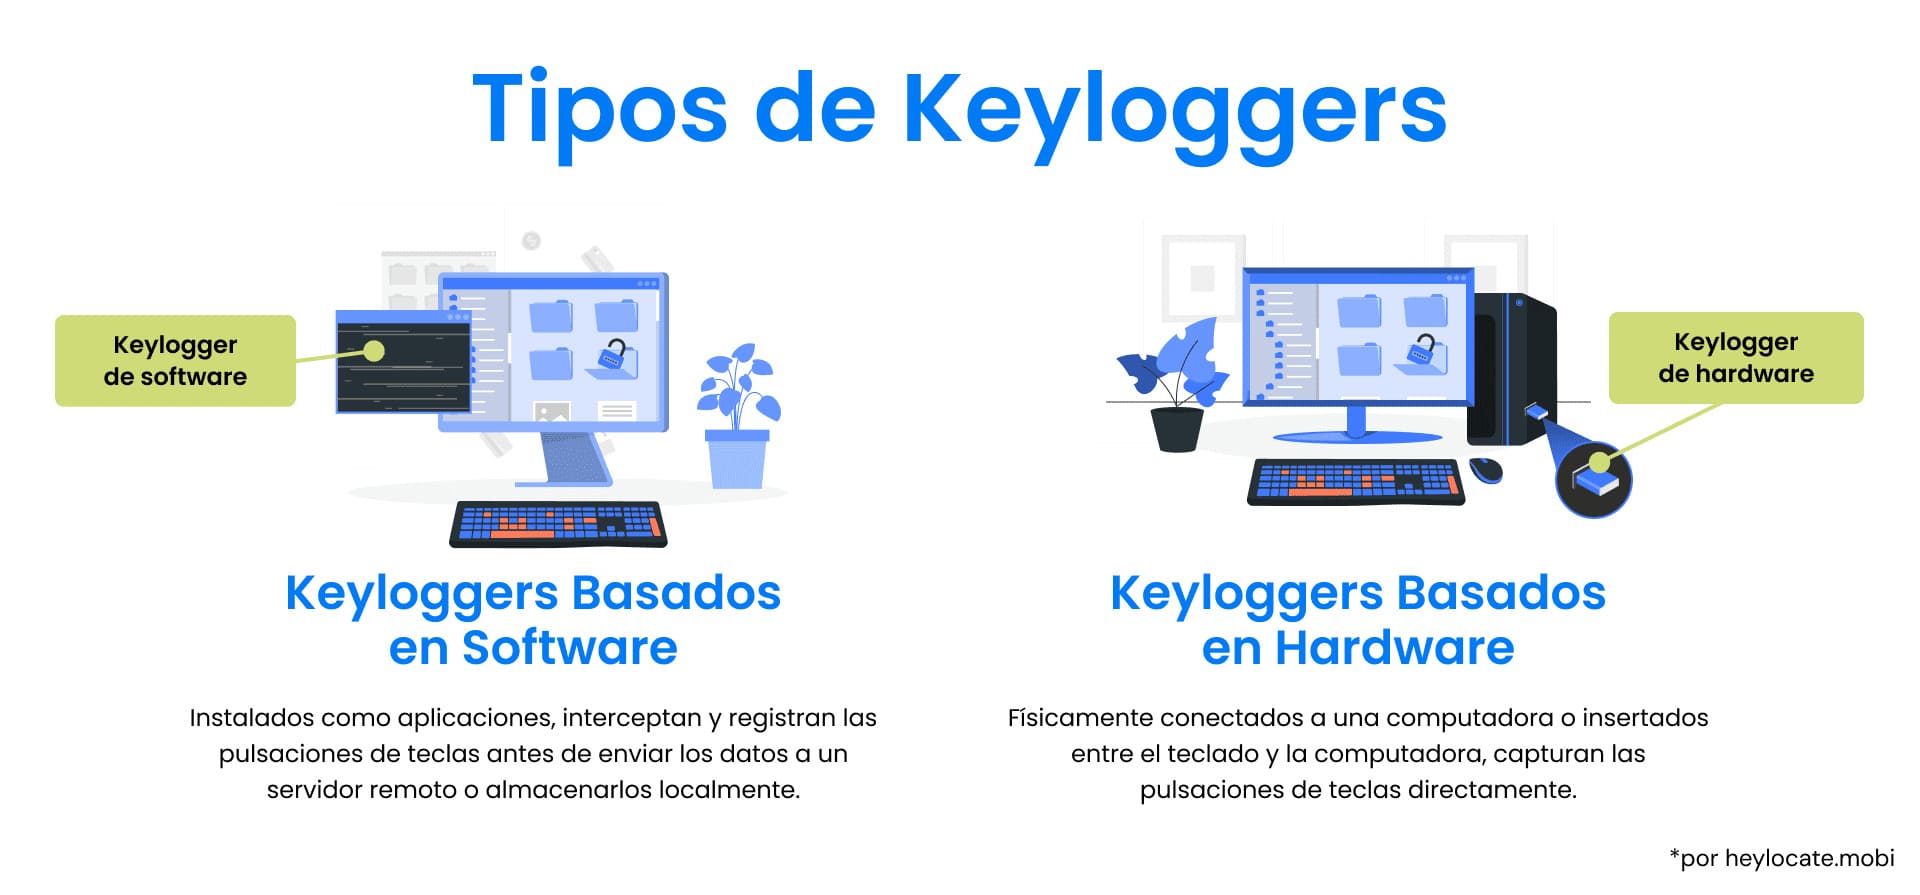 Comparación ilustrada entre keyloggers basados en software y keyloggers basados en hardware, mostrando sus modos de funcionamiento